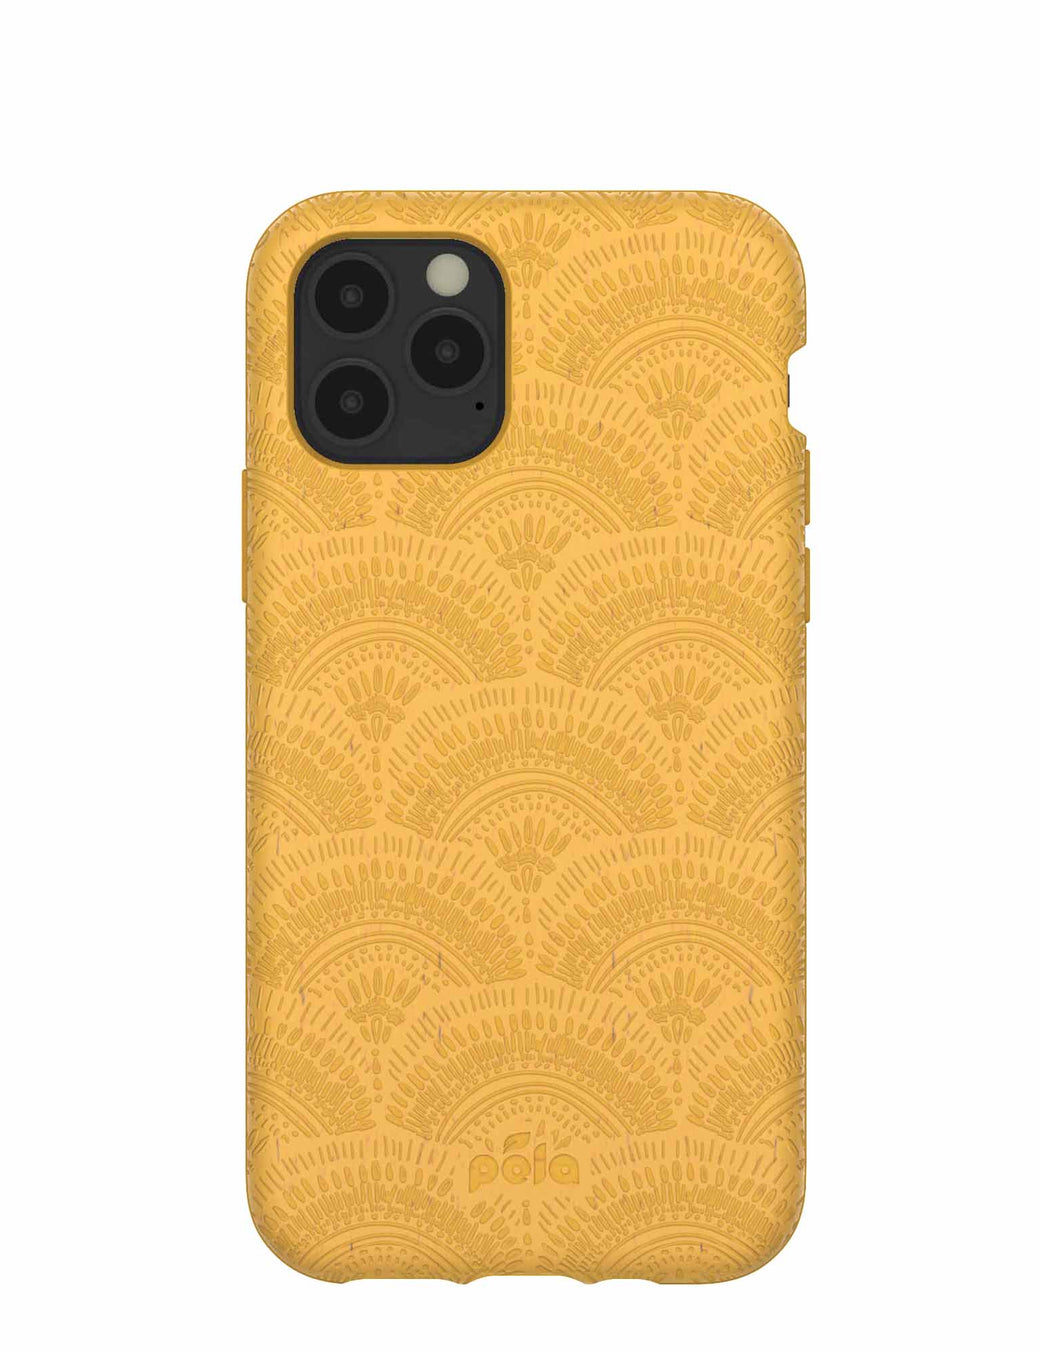 Honey Sunburst iPhone 11 Pro Case